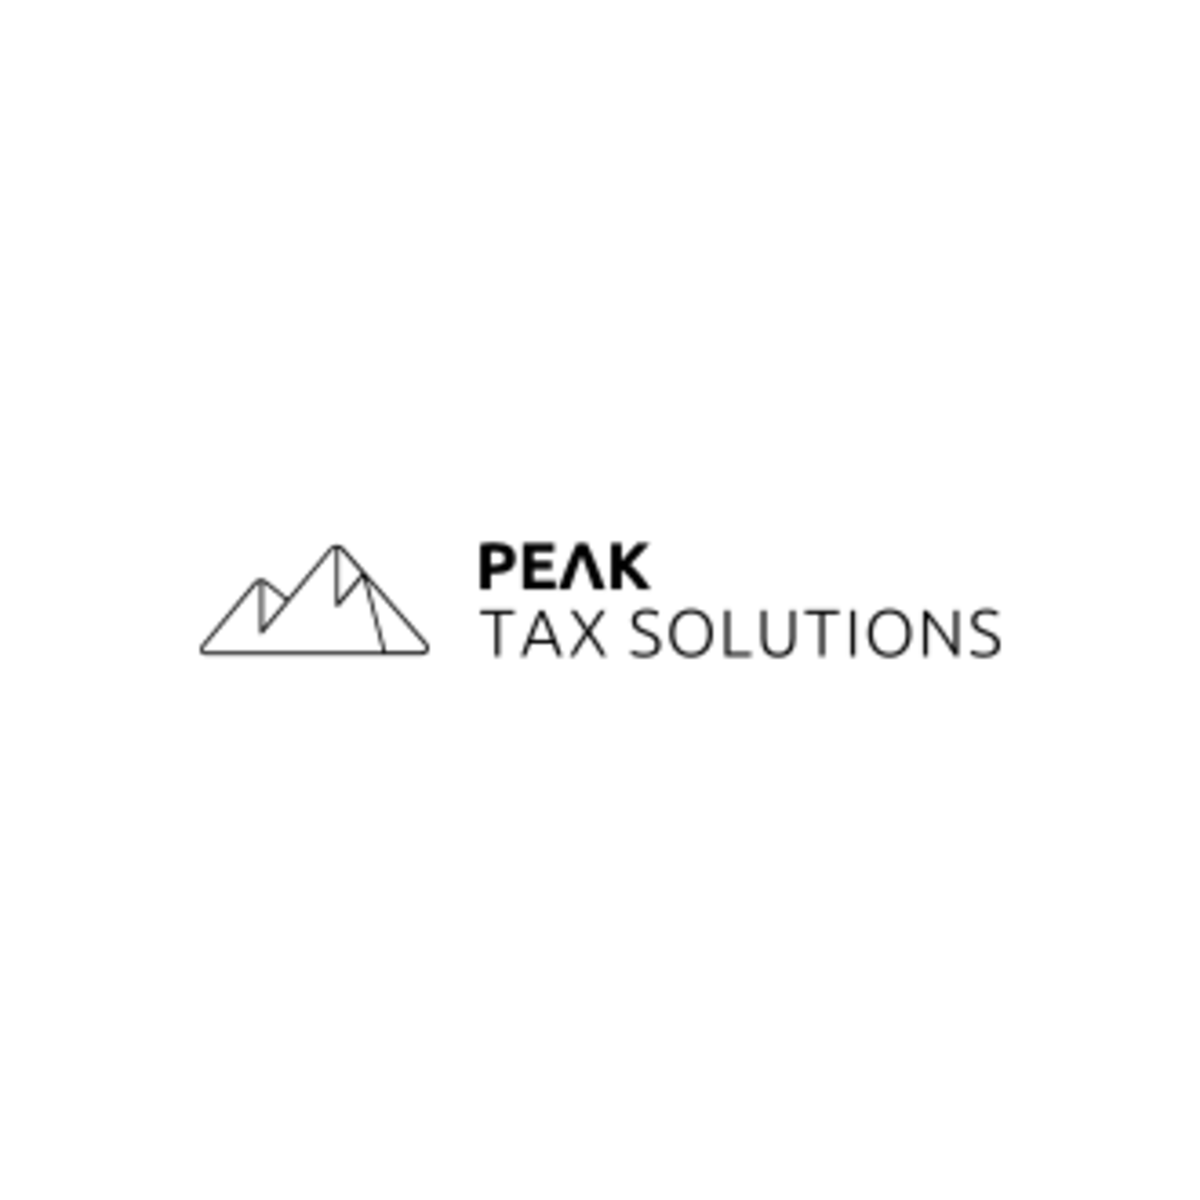 Gestoría Peak Tax Solutions